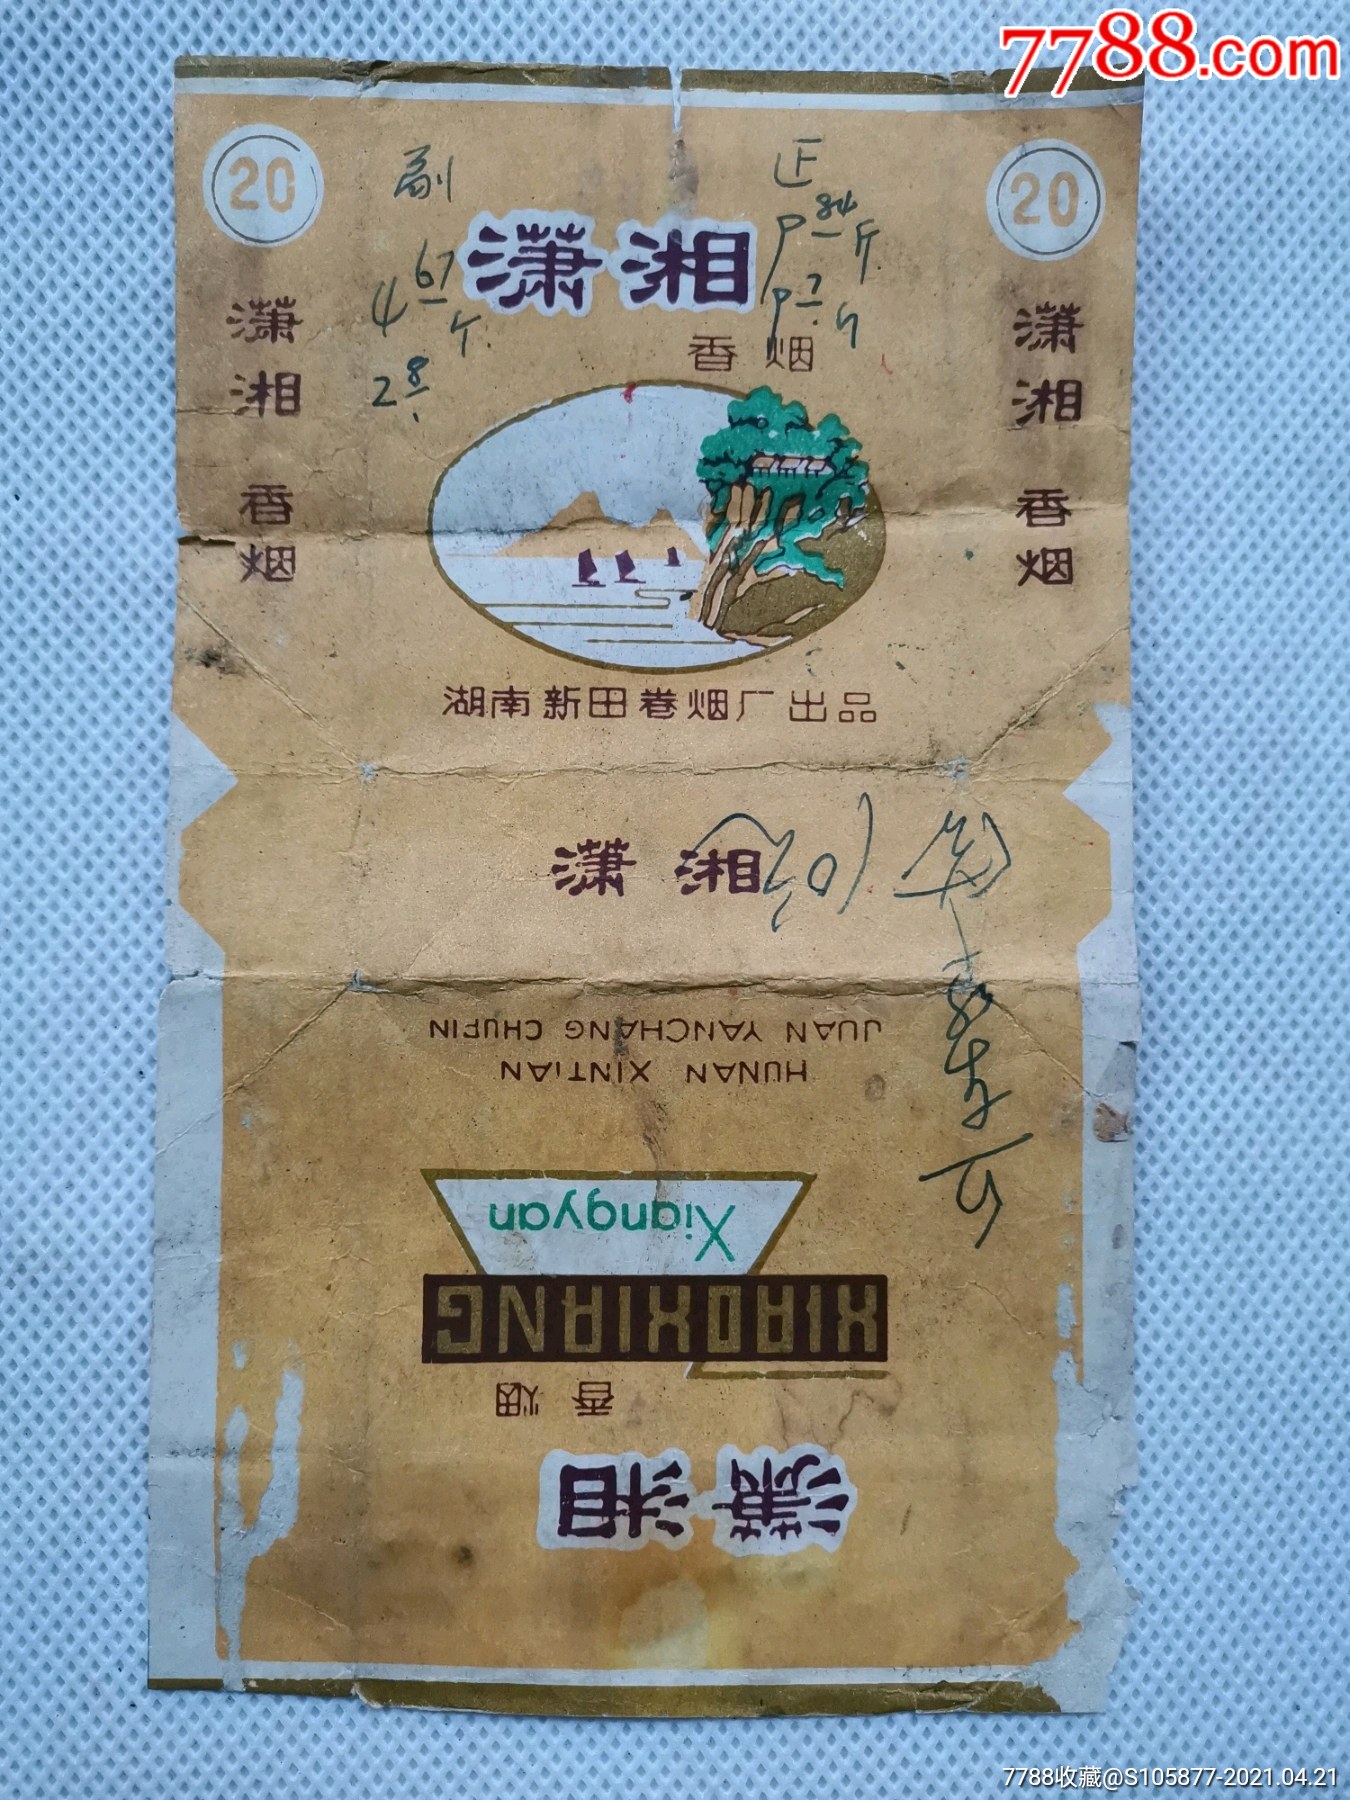 湖南新田卷烟厂出品的潇湘香烟烟标一张